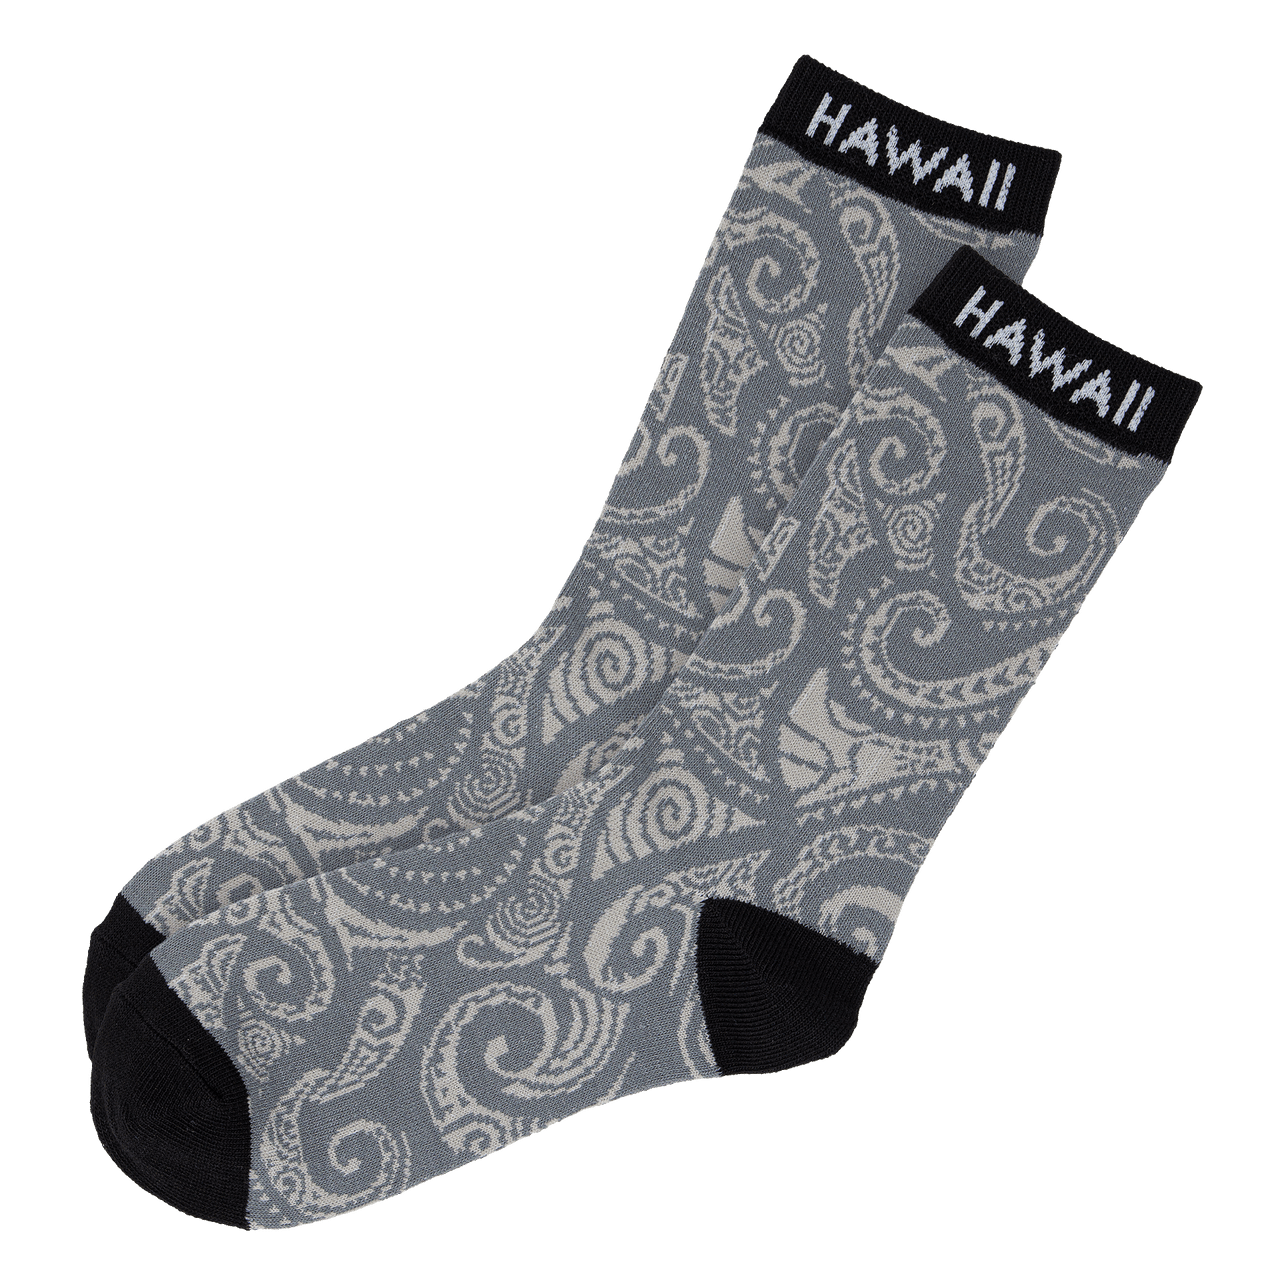 Moana Socks for Sale